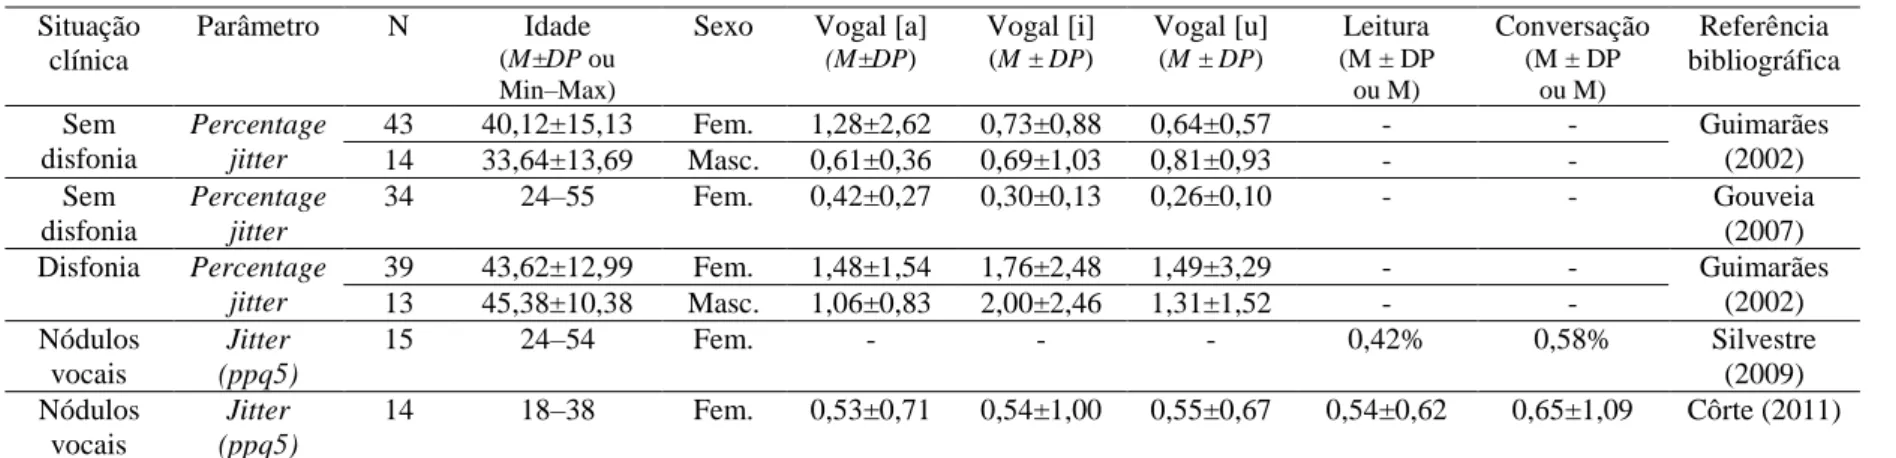 Tabela 14. Valores percentuais de jitter para falantes do PE sem e com disfonia, considerando o sexo e o comportamento vocal